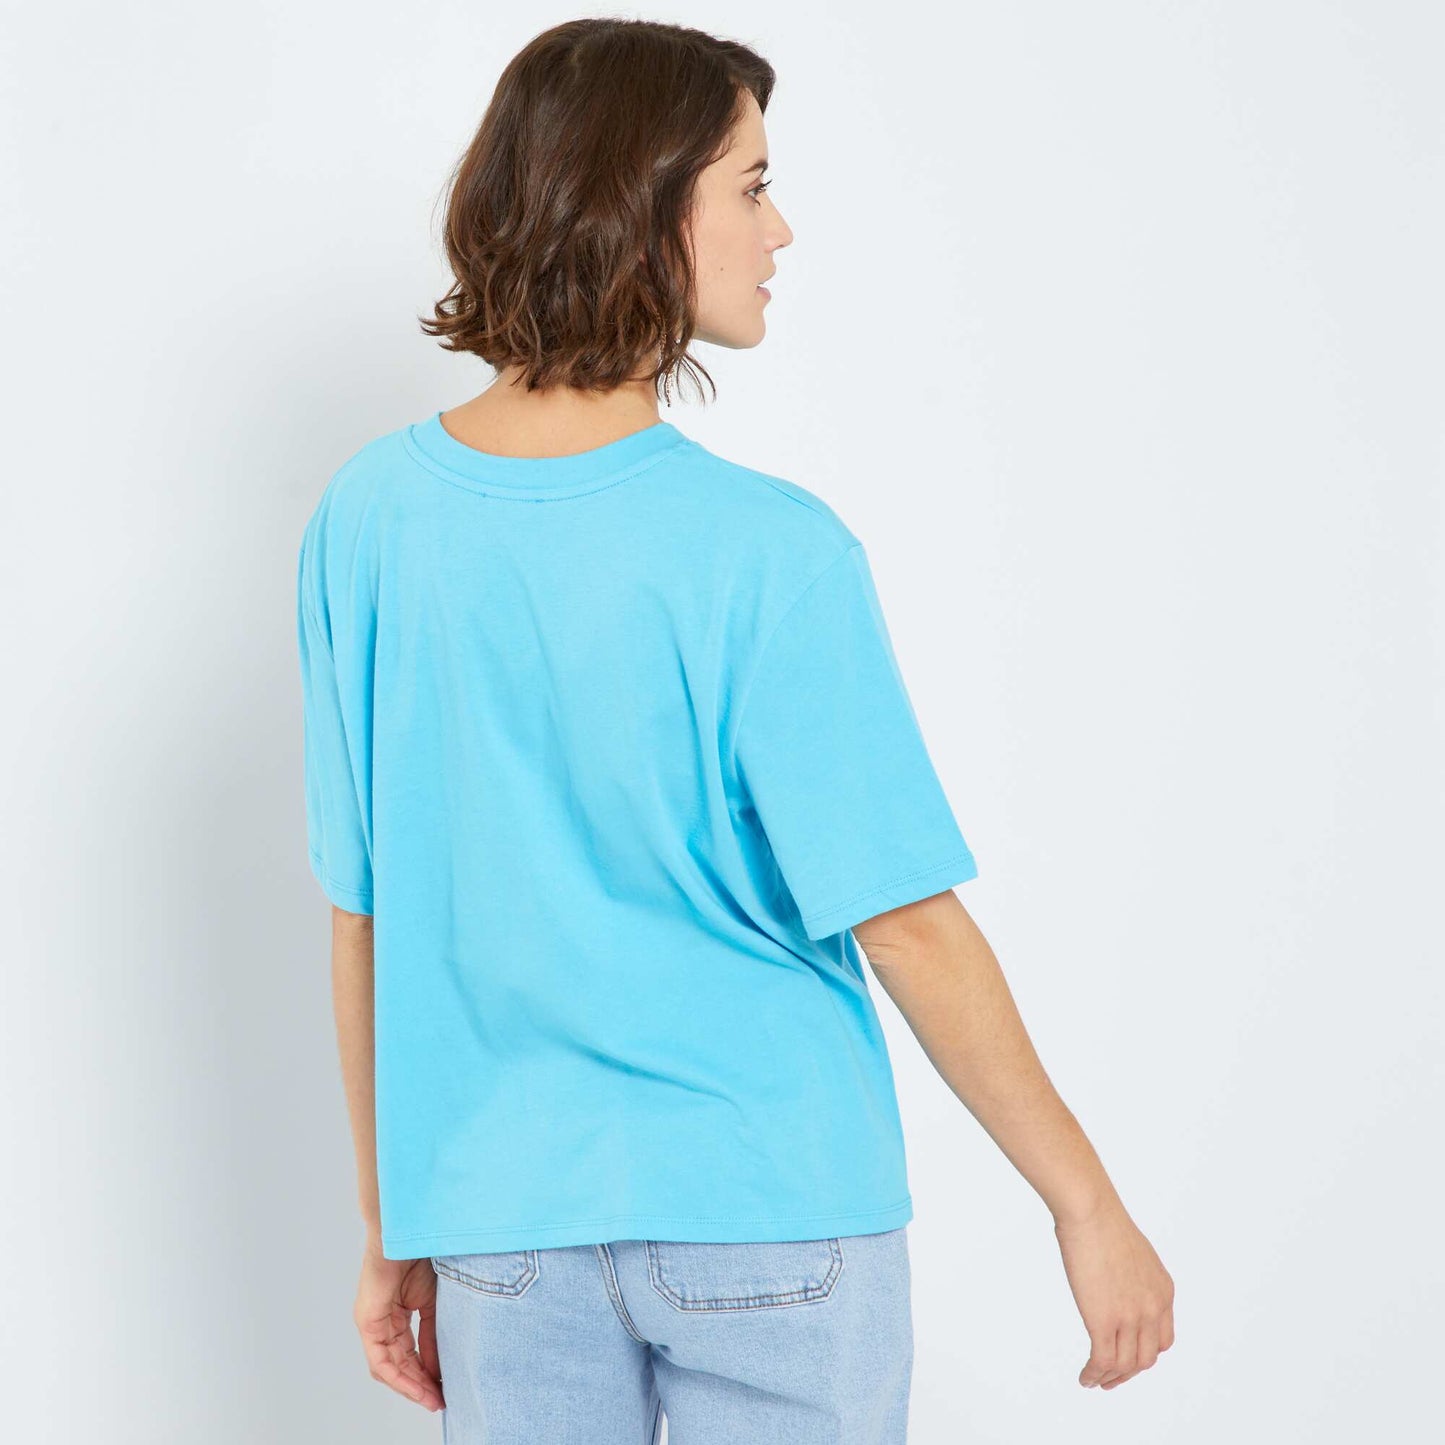 T-shirt 'Amour'   col rond bleu cyan